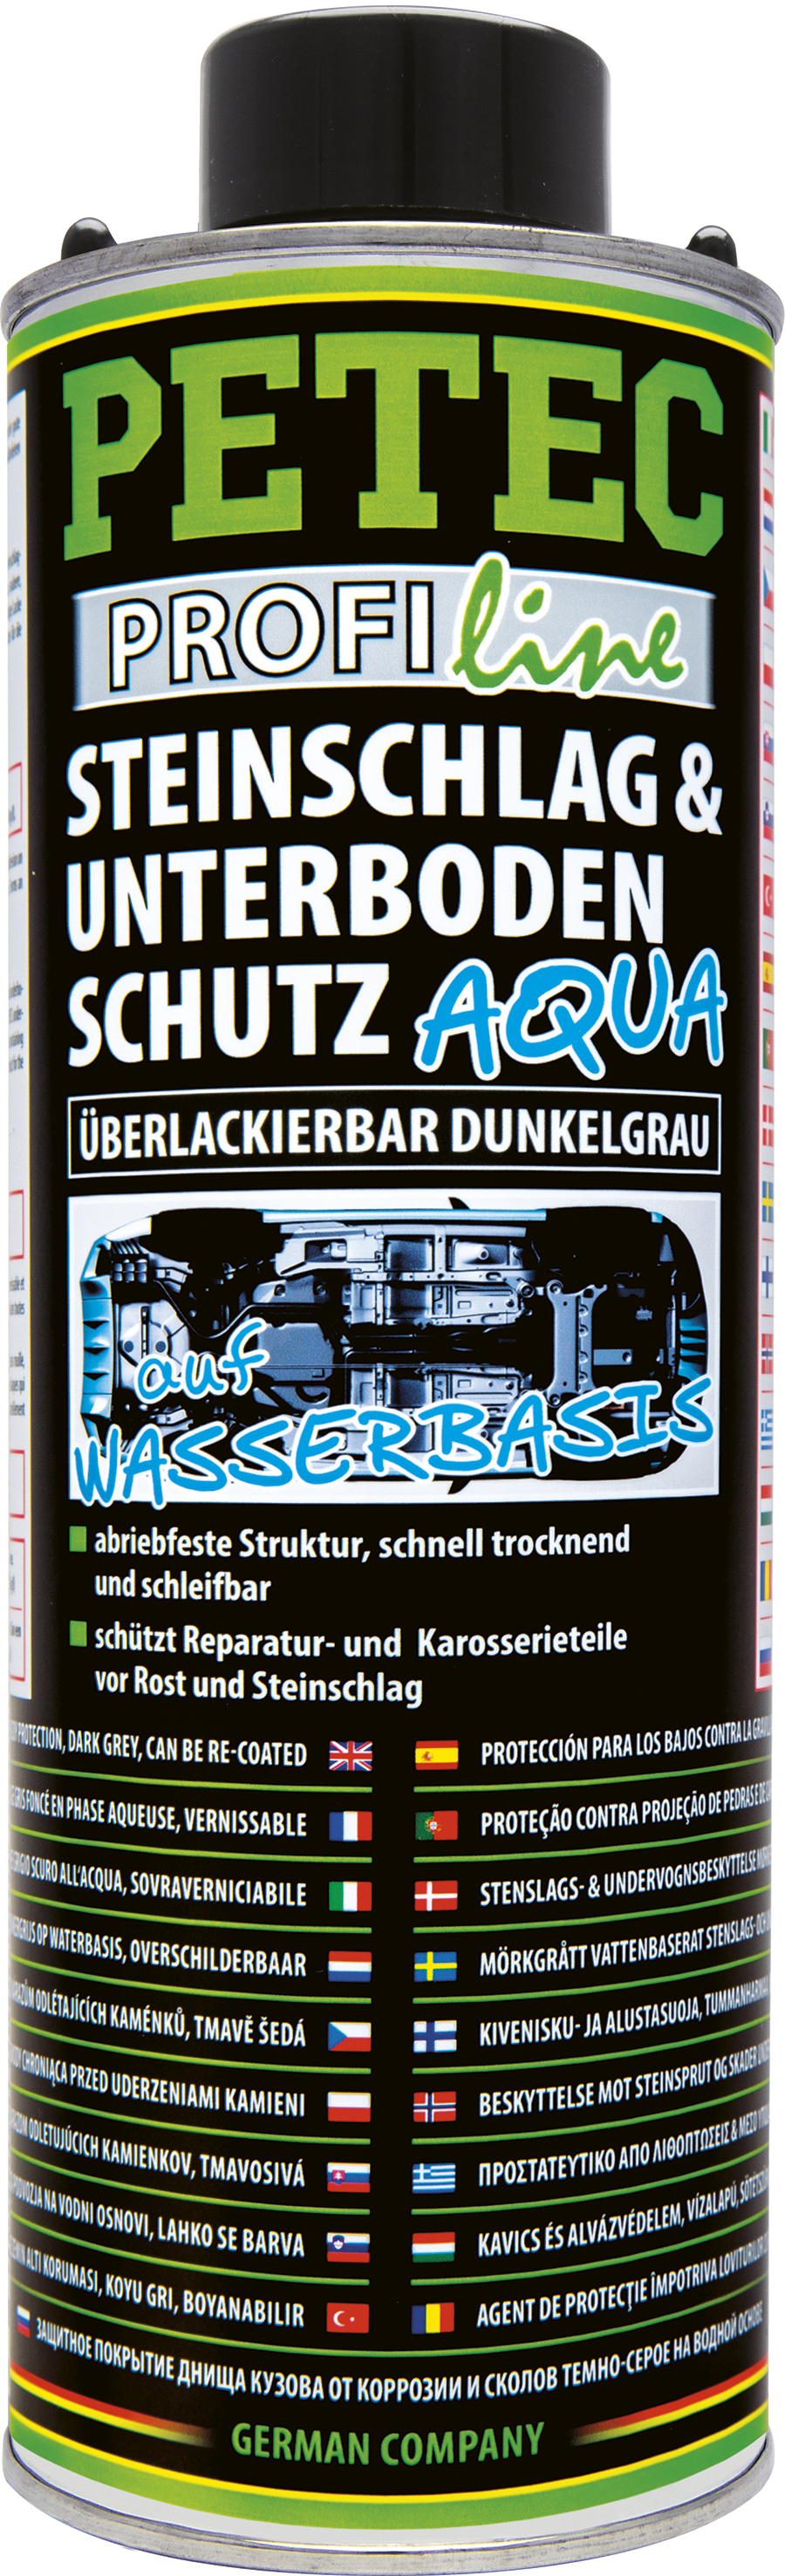 SprayTec Steinschlag & Unterbodenschutz Spray schwarz 1000 ml